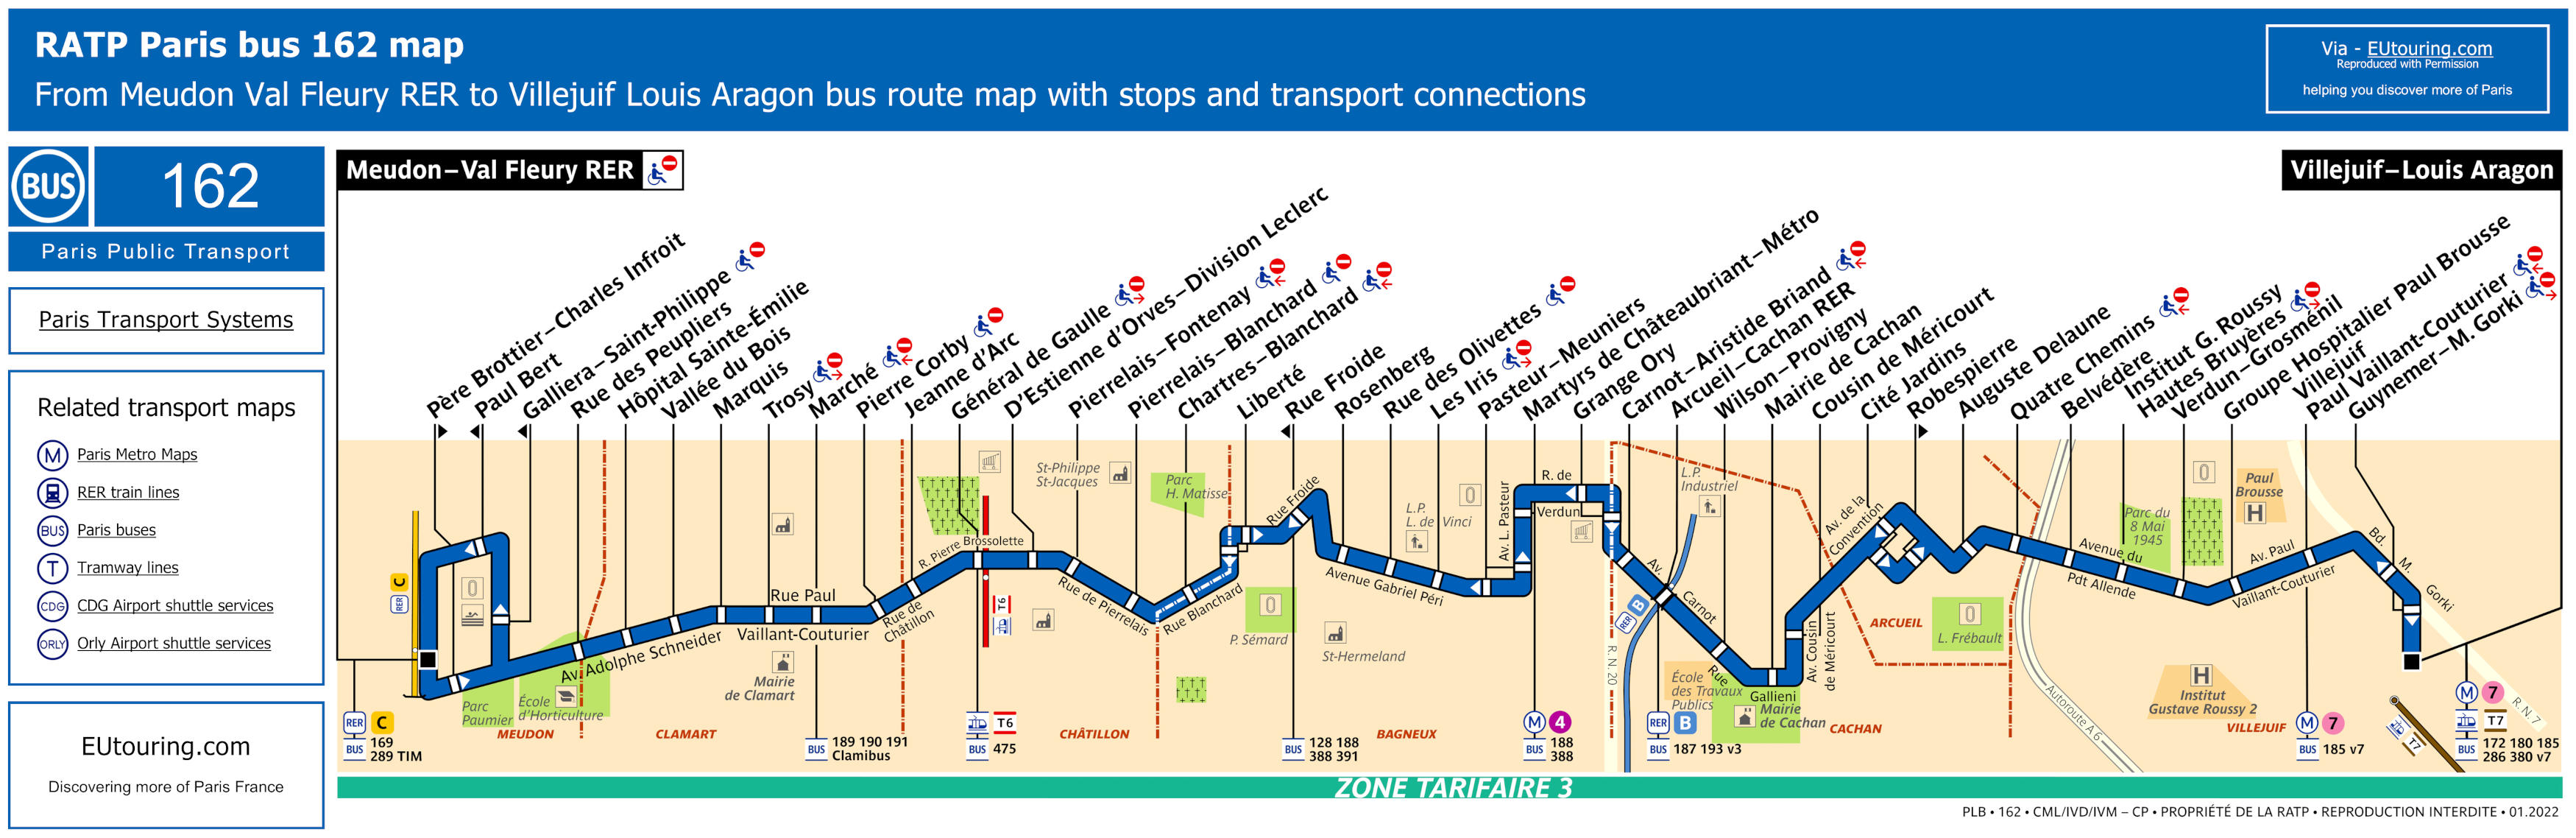 Paris bus 162 route maps available.